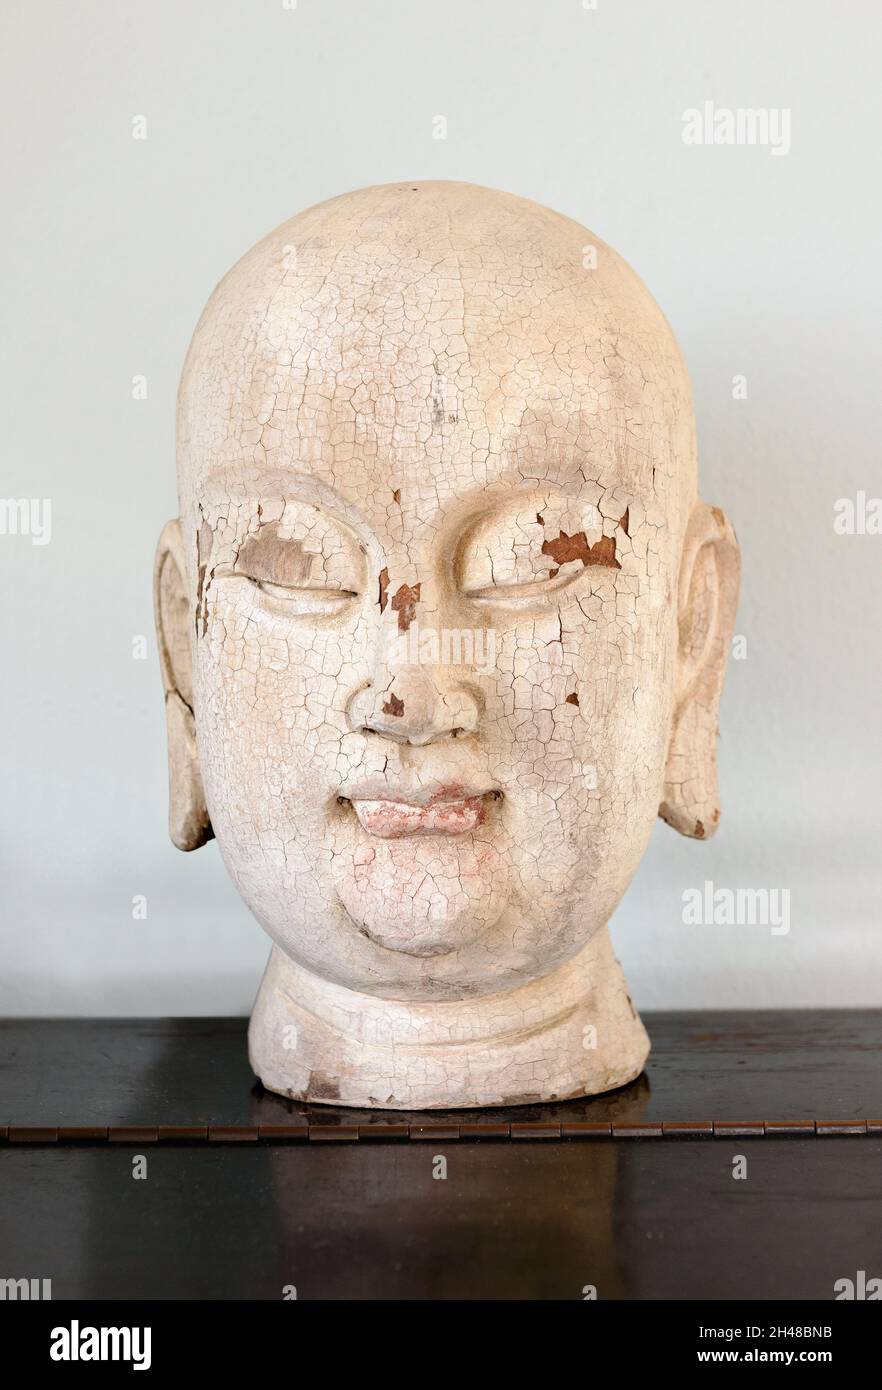 Gros plan sur une tête de Bouddha en bois ancienne ou ancienne avec une peinture de craquage et une expression spirituelle sereine affichée sur une étagère Banque D'Images